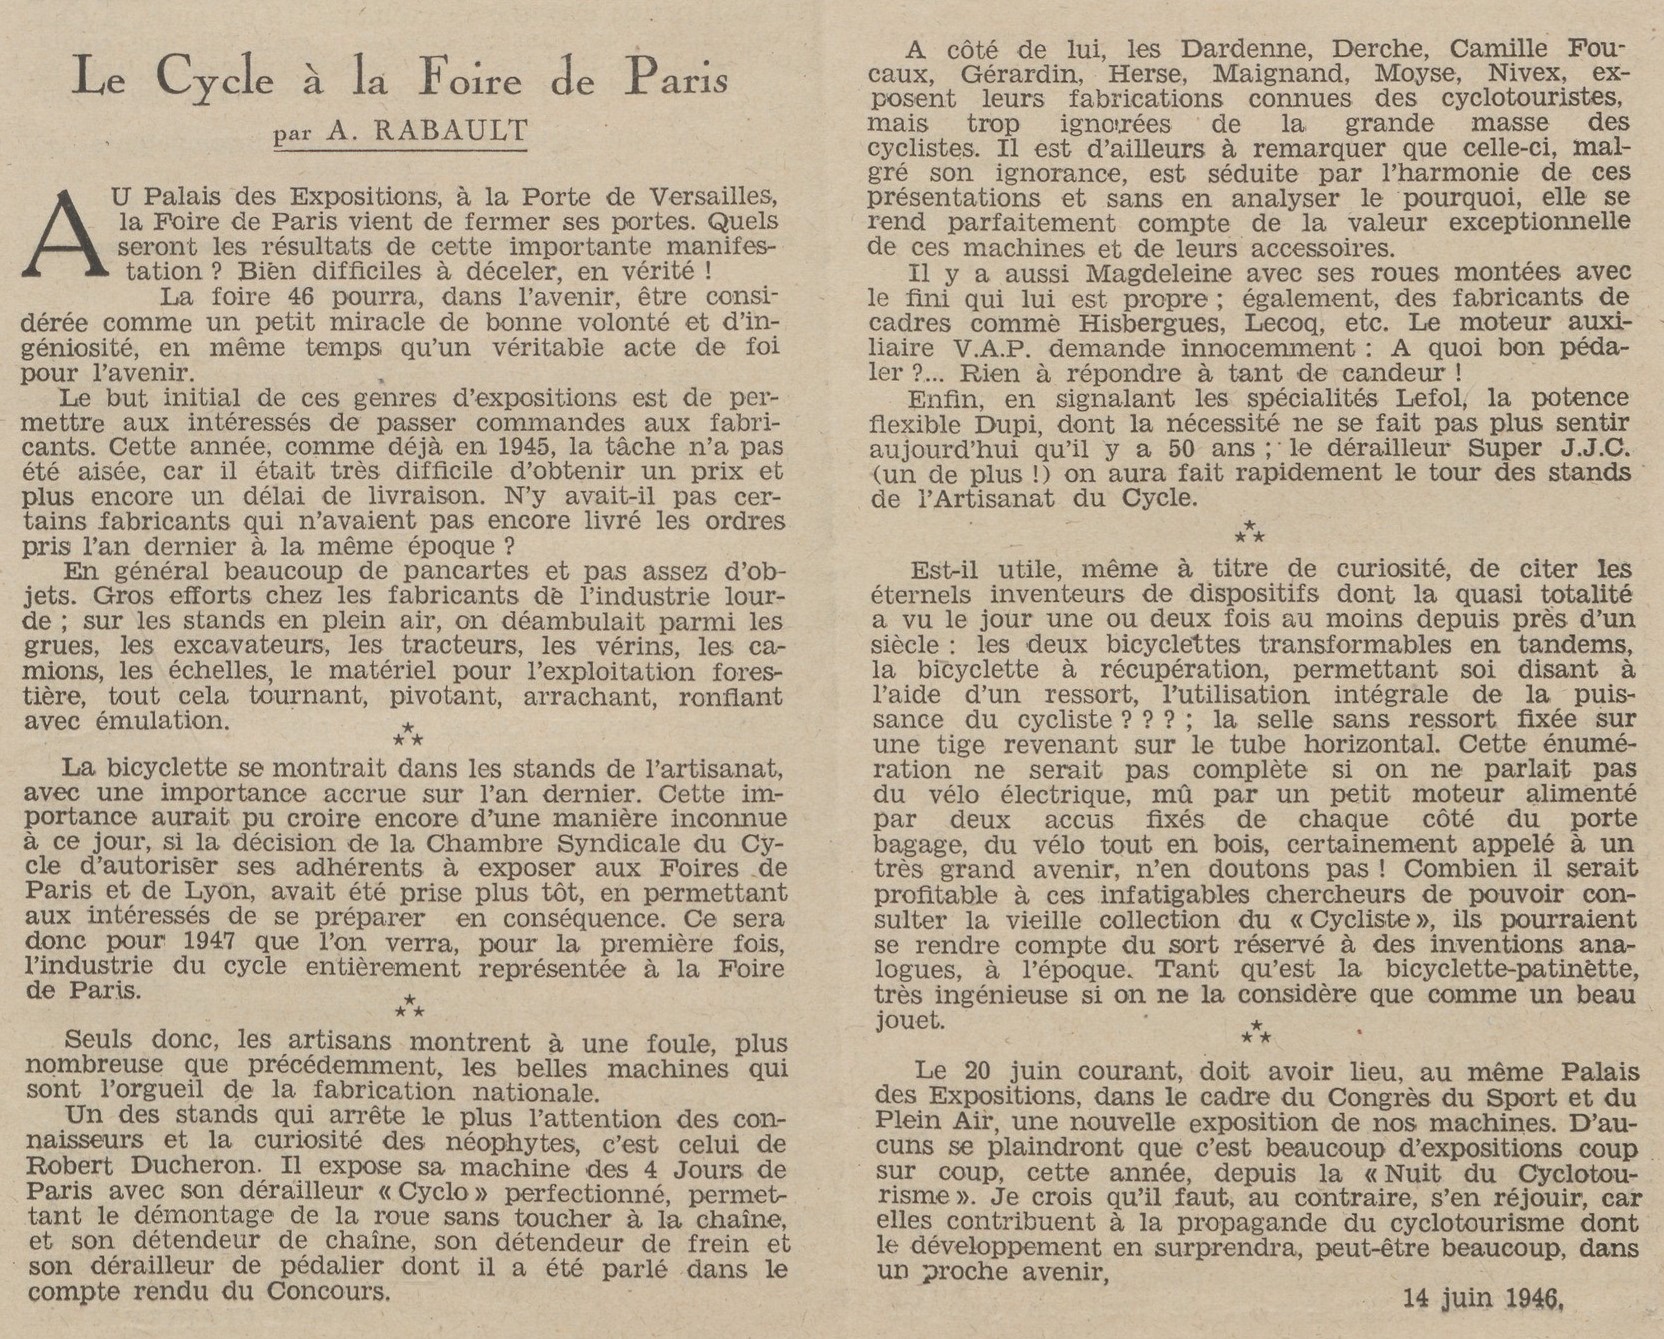 Salon du Cycle octobre 1946, Paris, le Grand Palais - L'Equipe - Cyclo Magazine 230210031408721918108772